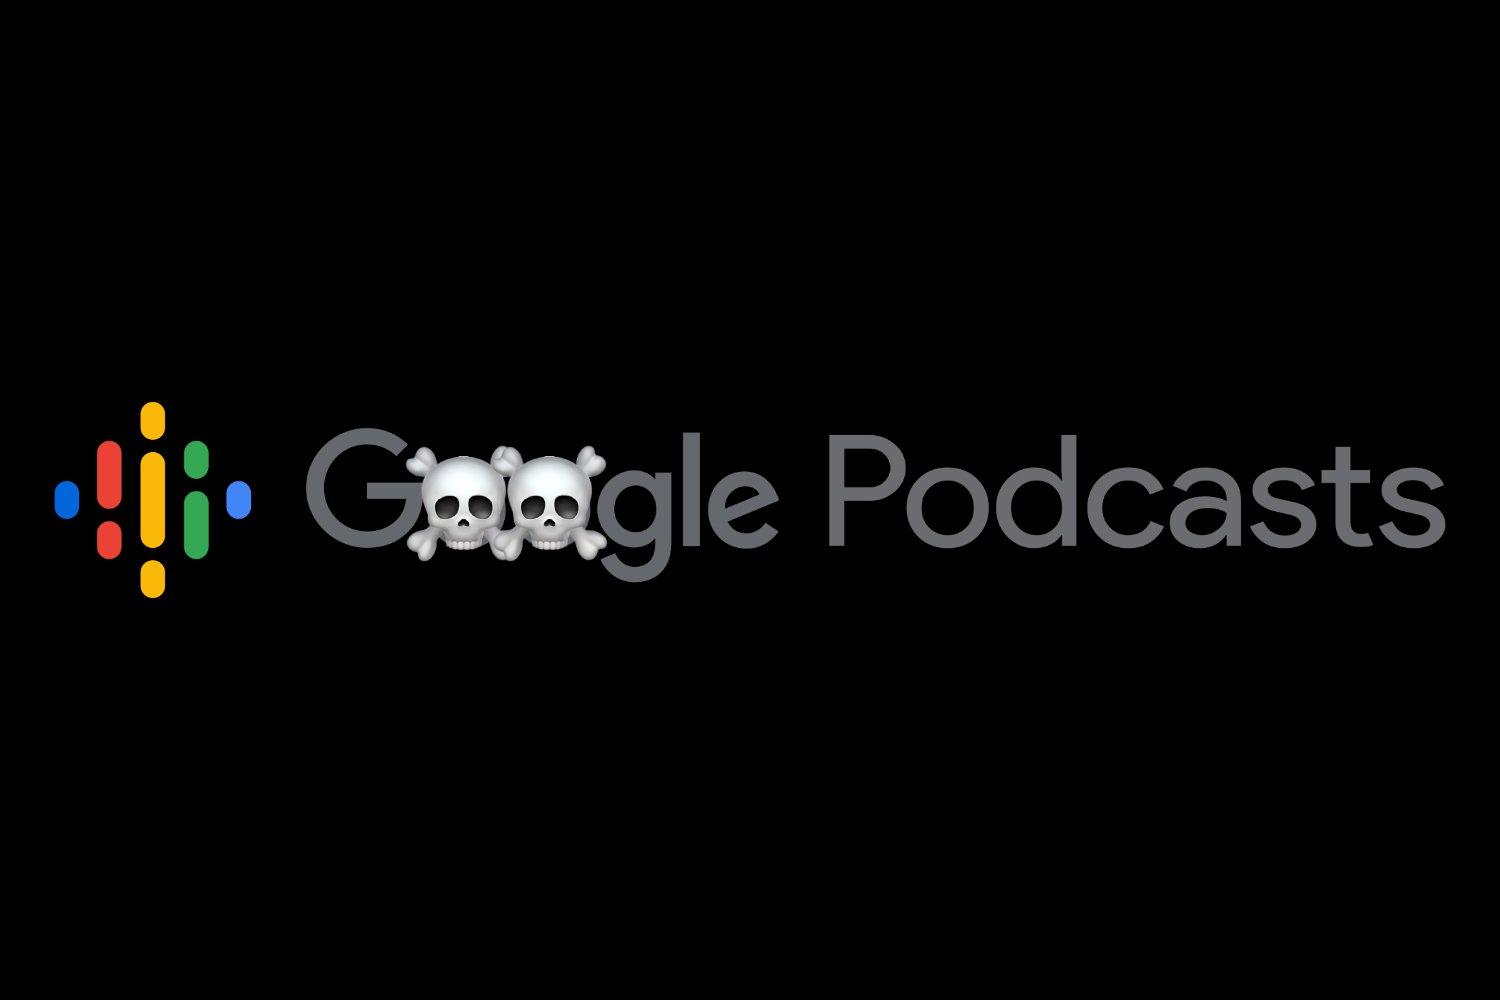 Google Podcasts rejoindra le grand cimetière de Google le 23 juin